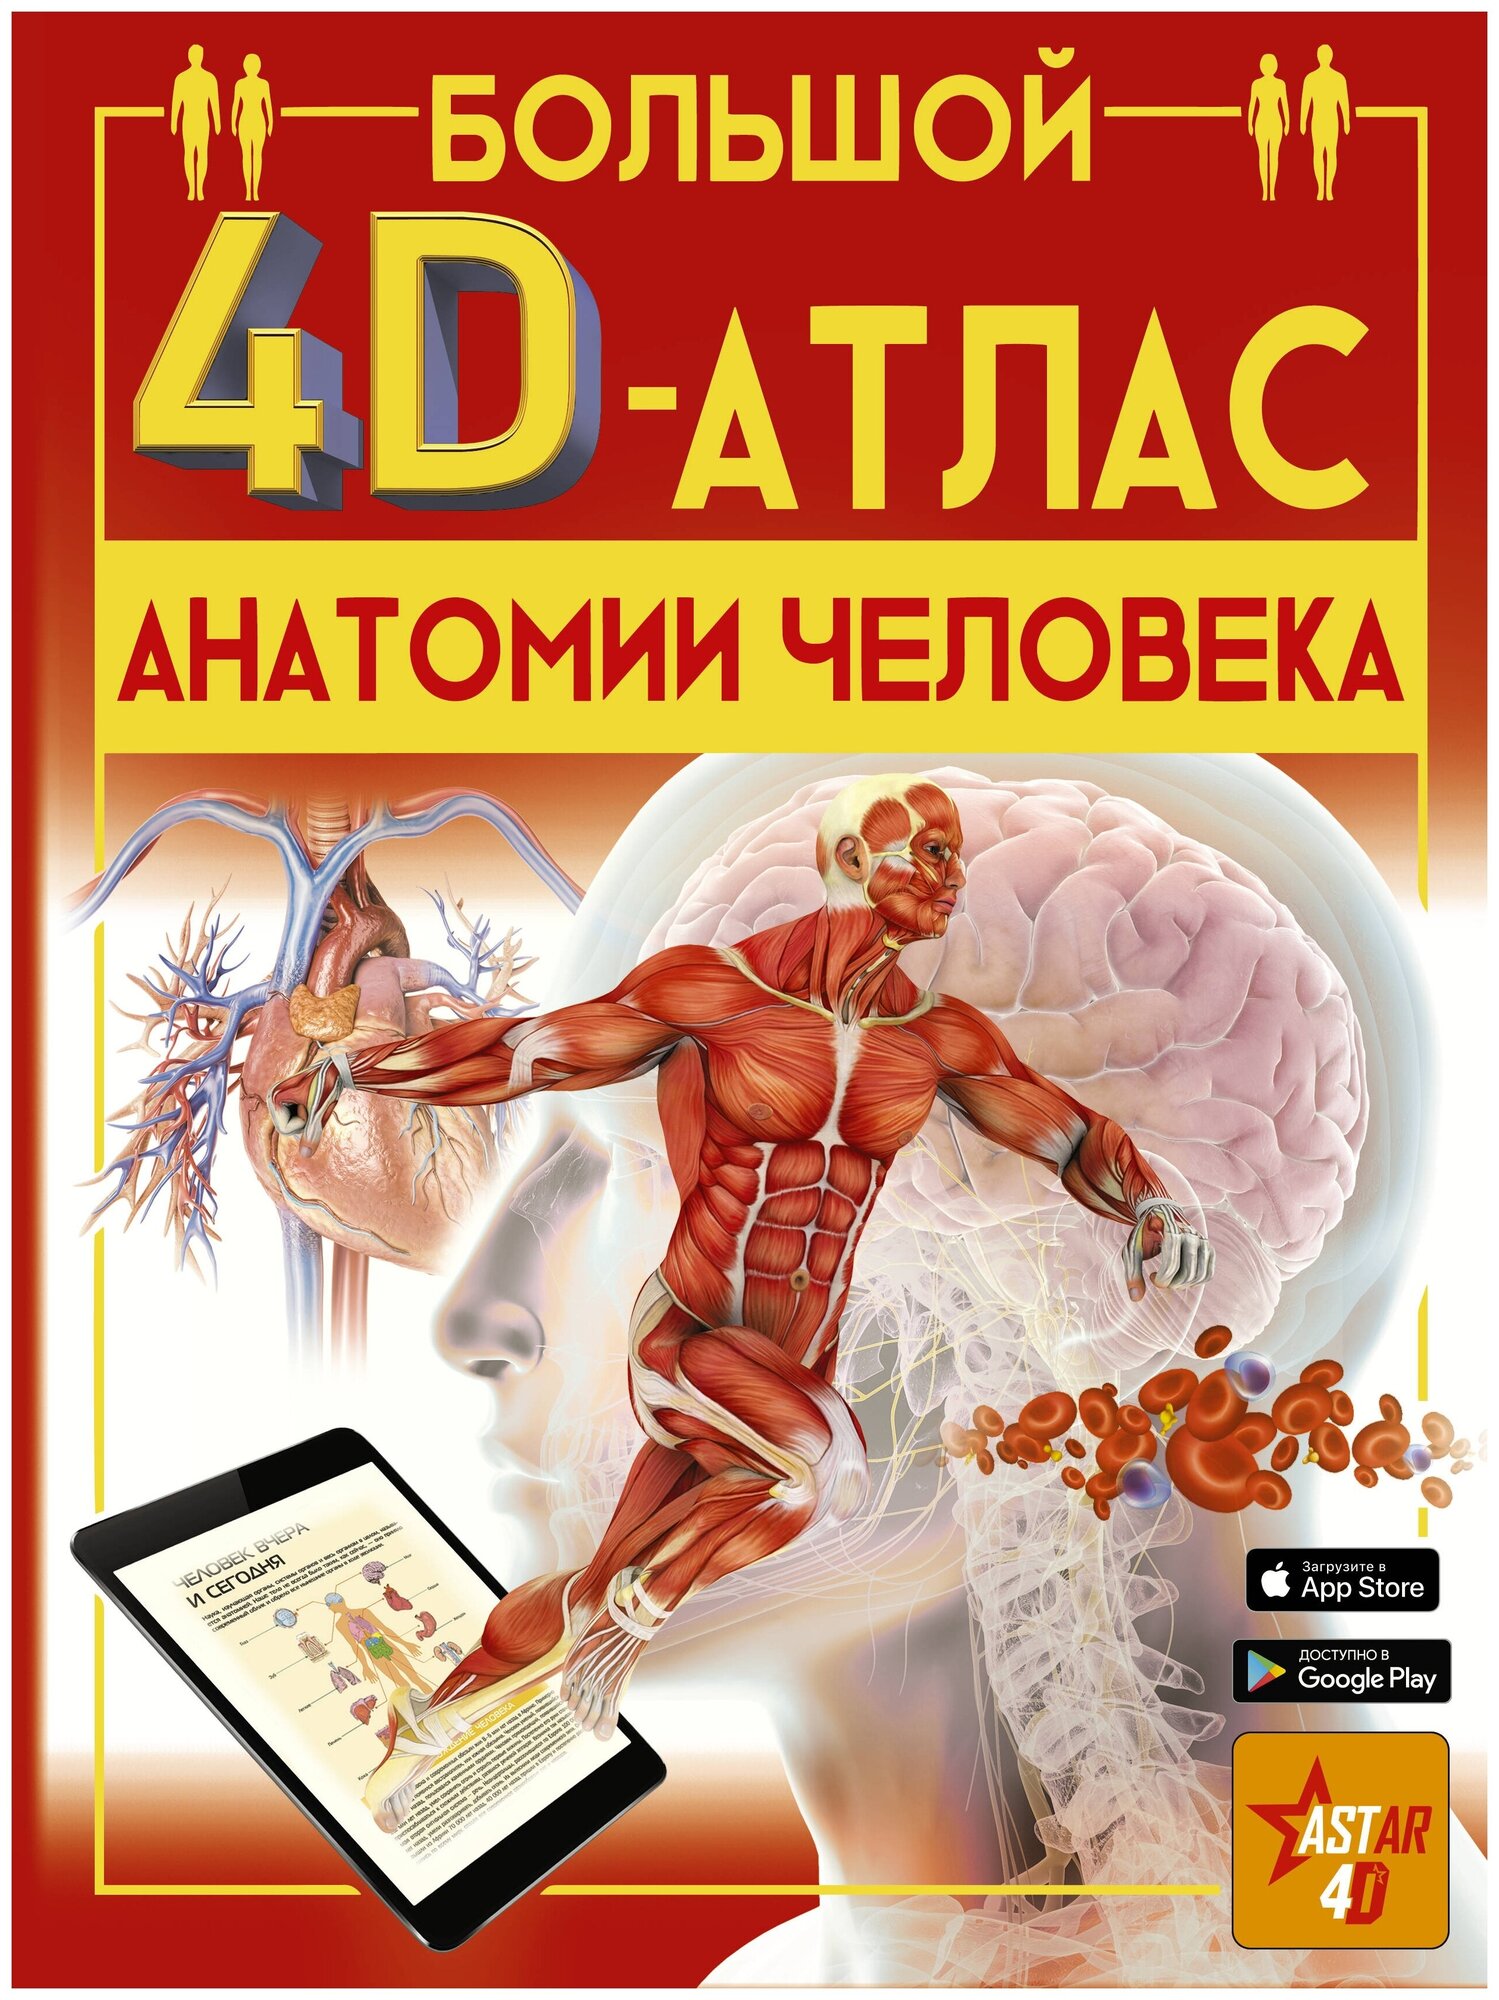 Большой 4D-атлас анатомии человека - фото №1